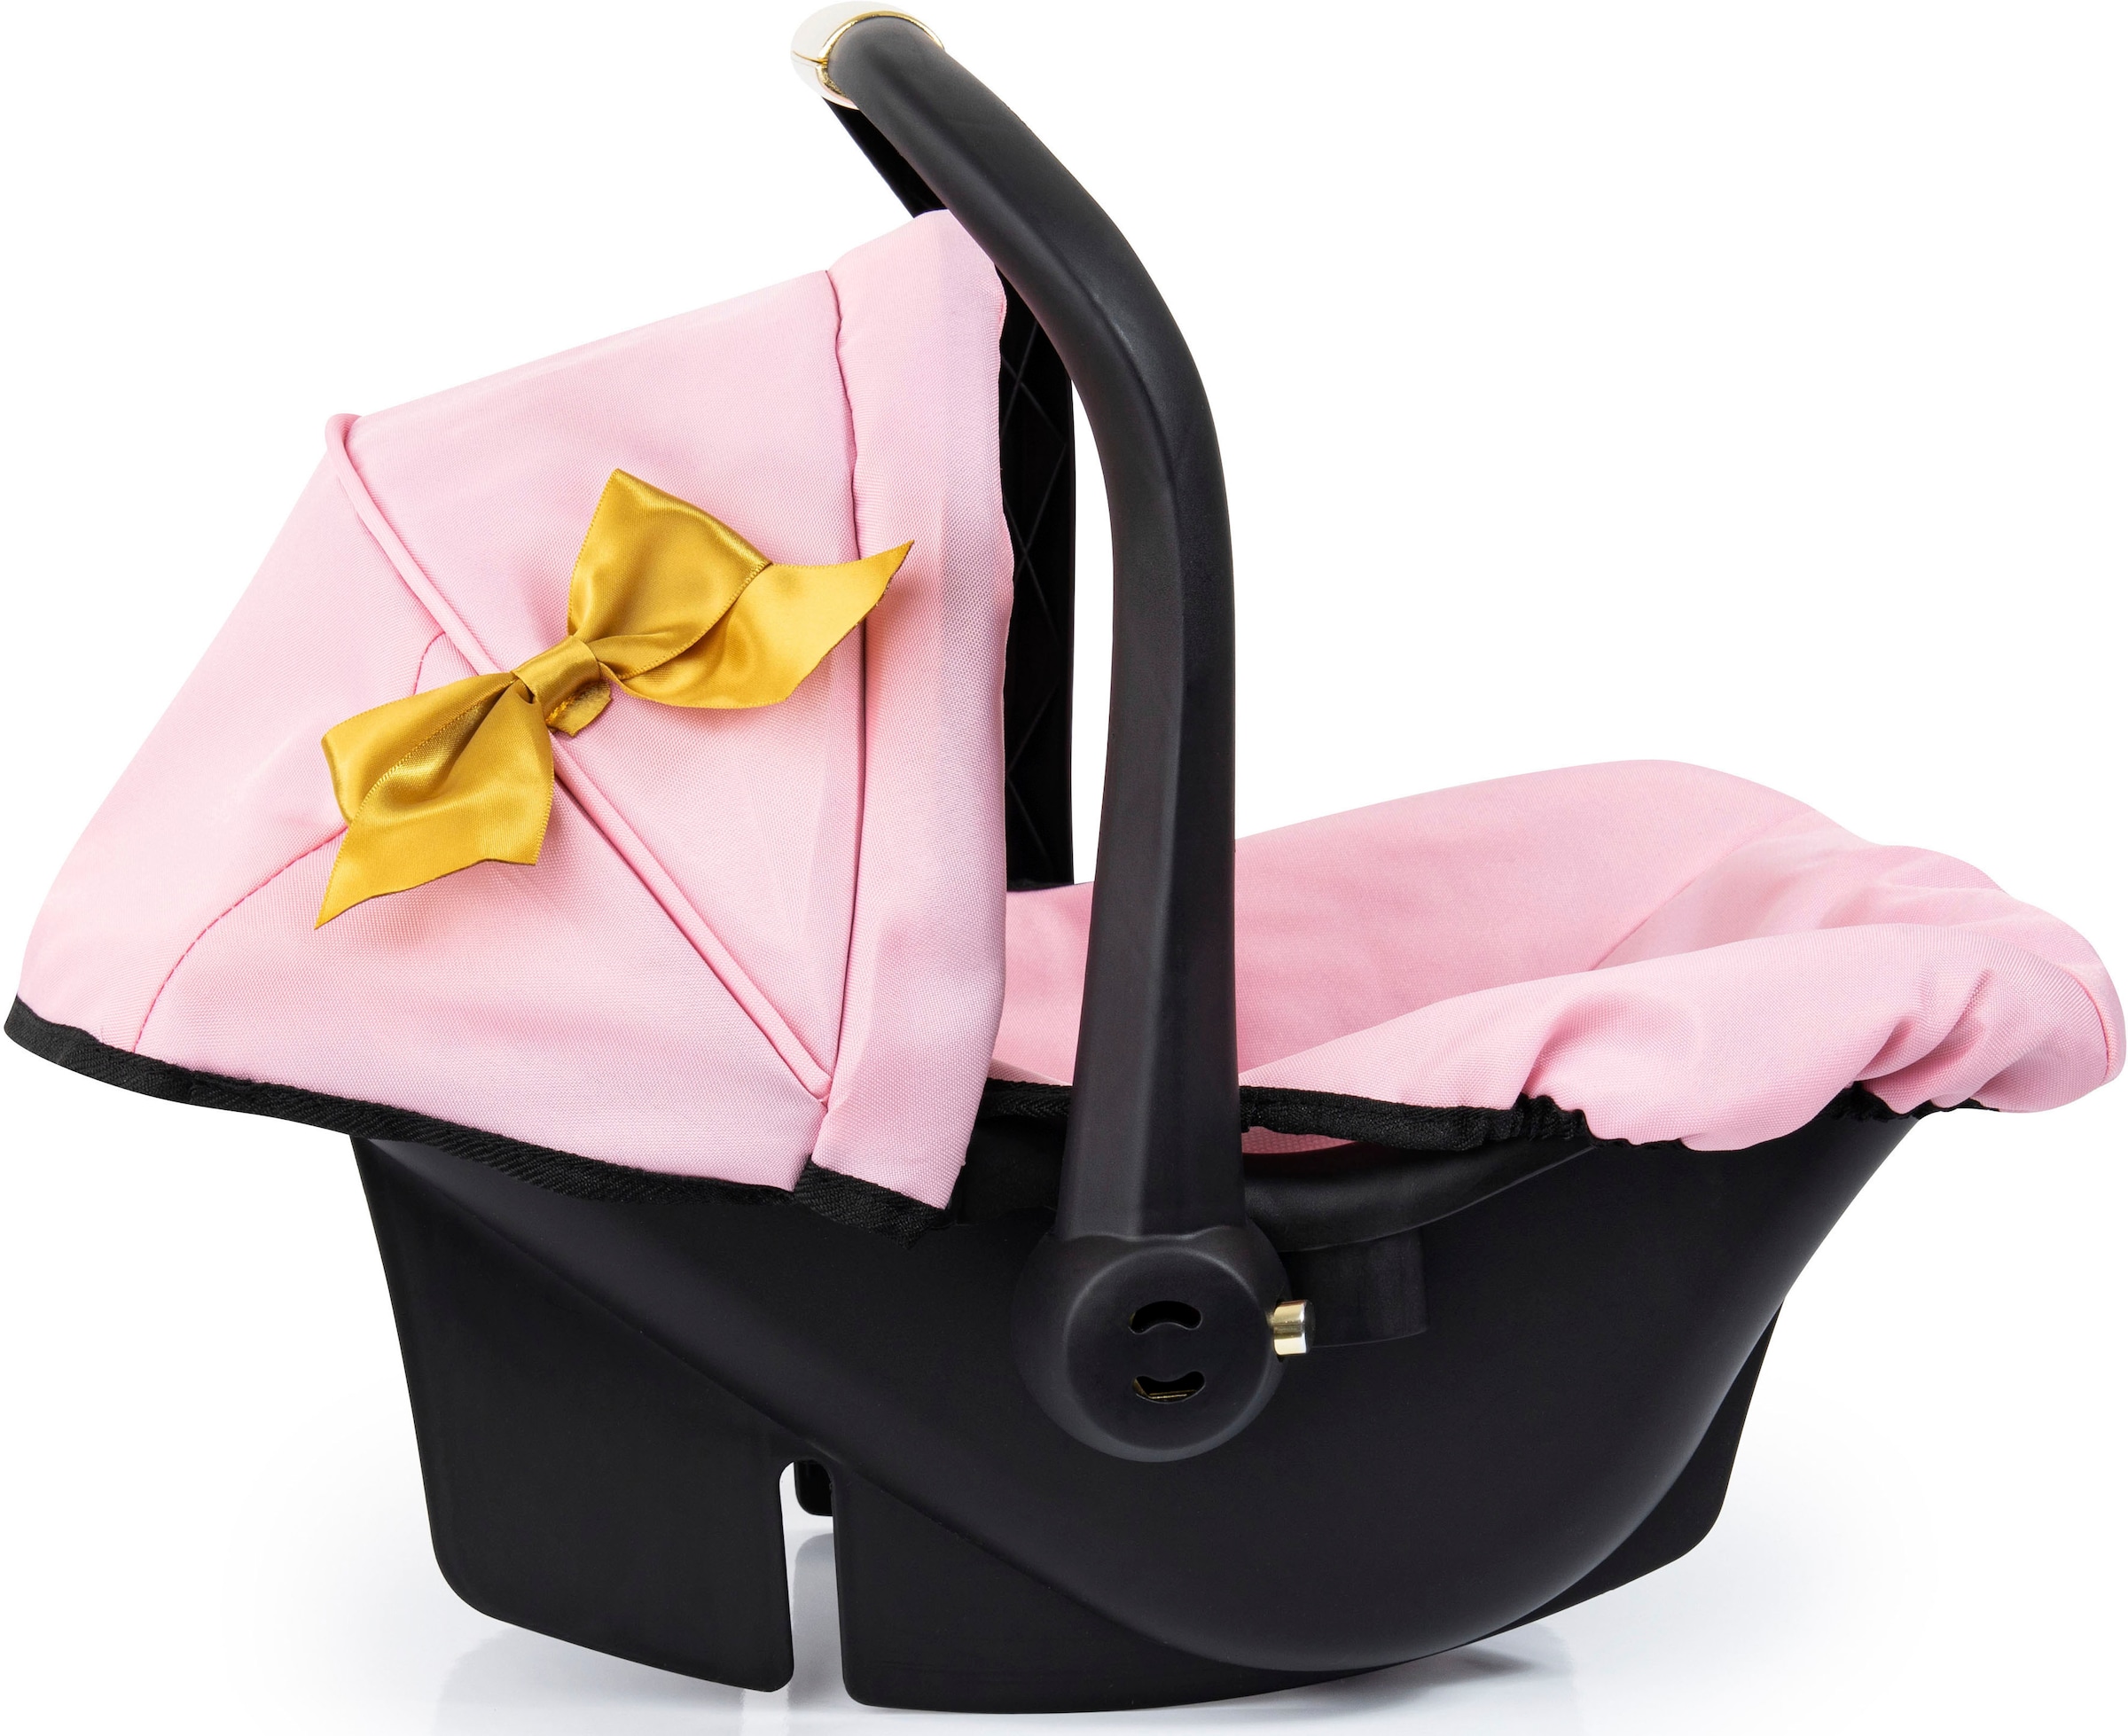 Bayer Puppen Autositz »Puppen-Autositz mit Dach, rosa/goldfarben«, rosa/goldarben, mit Dach